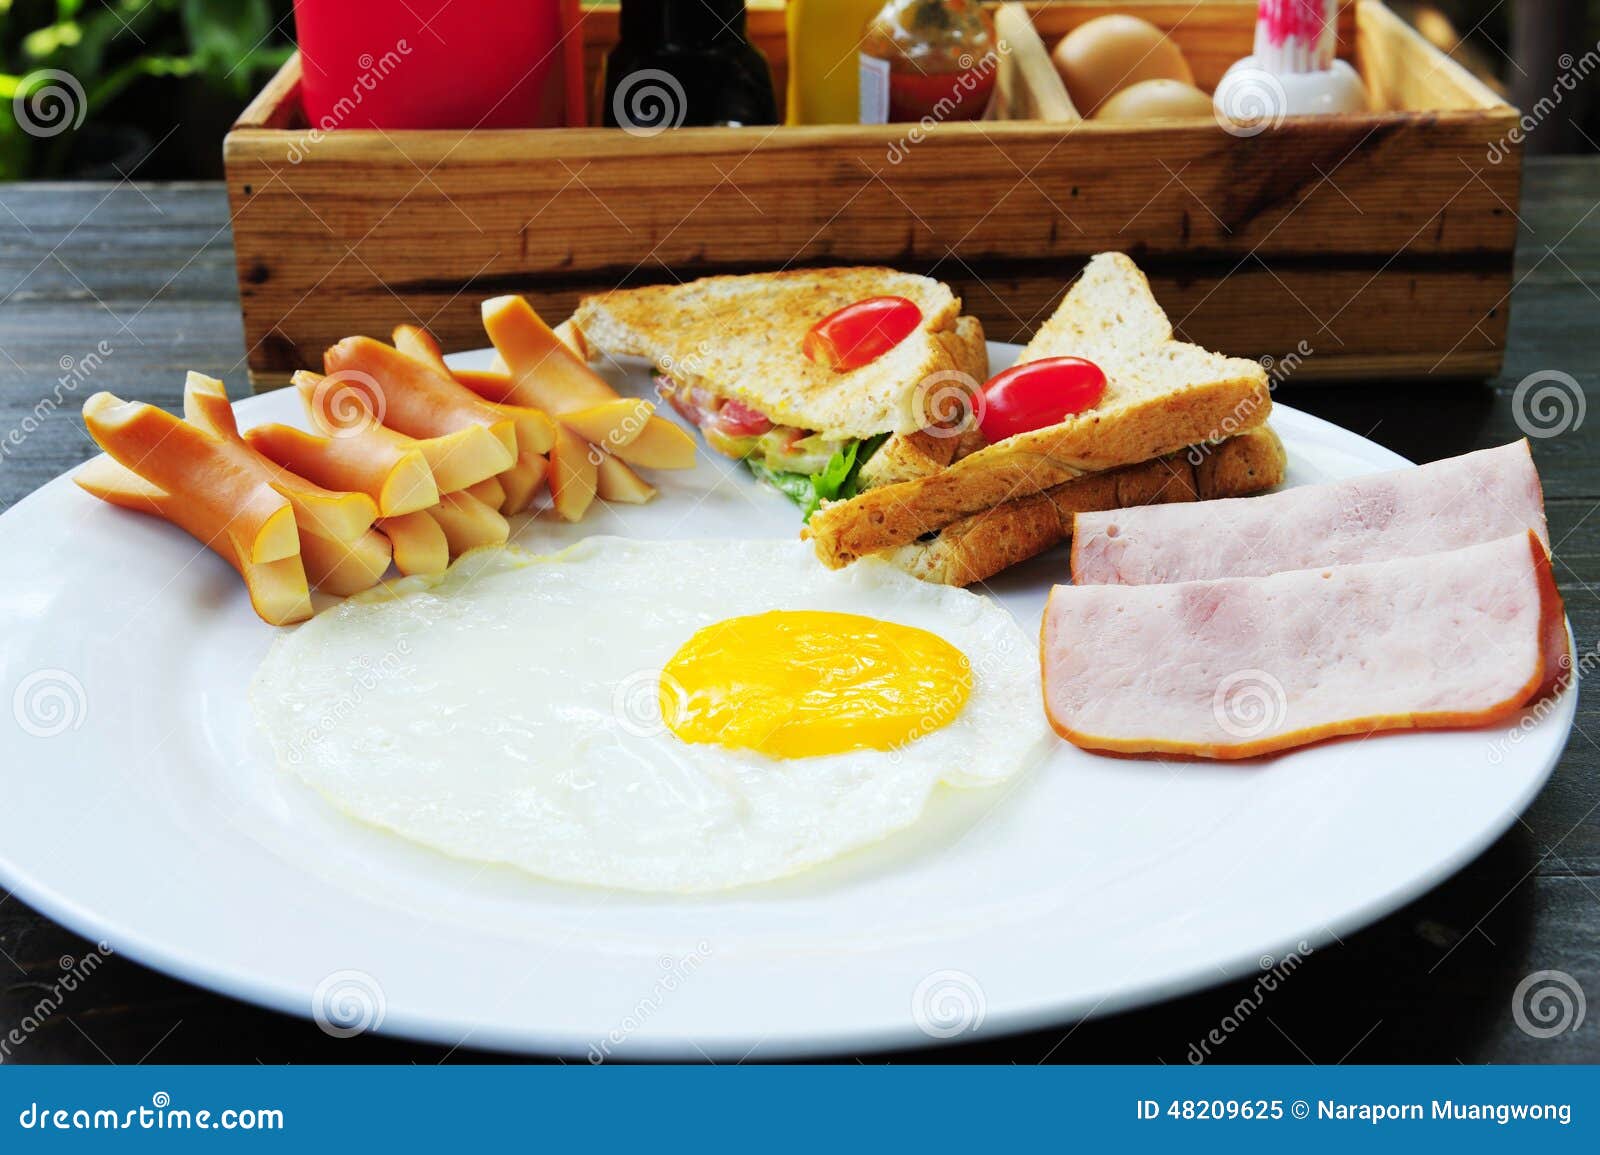 英式早餐怎么做_英式早餐的做法_刘大花_豆果美食